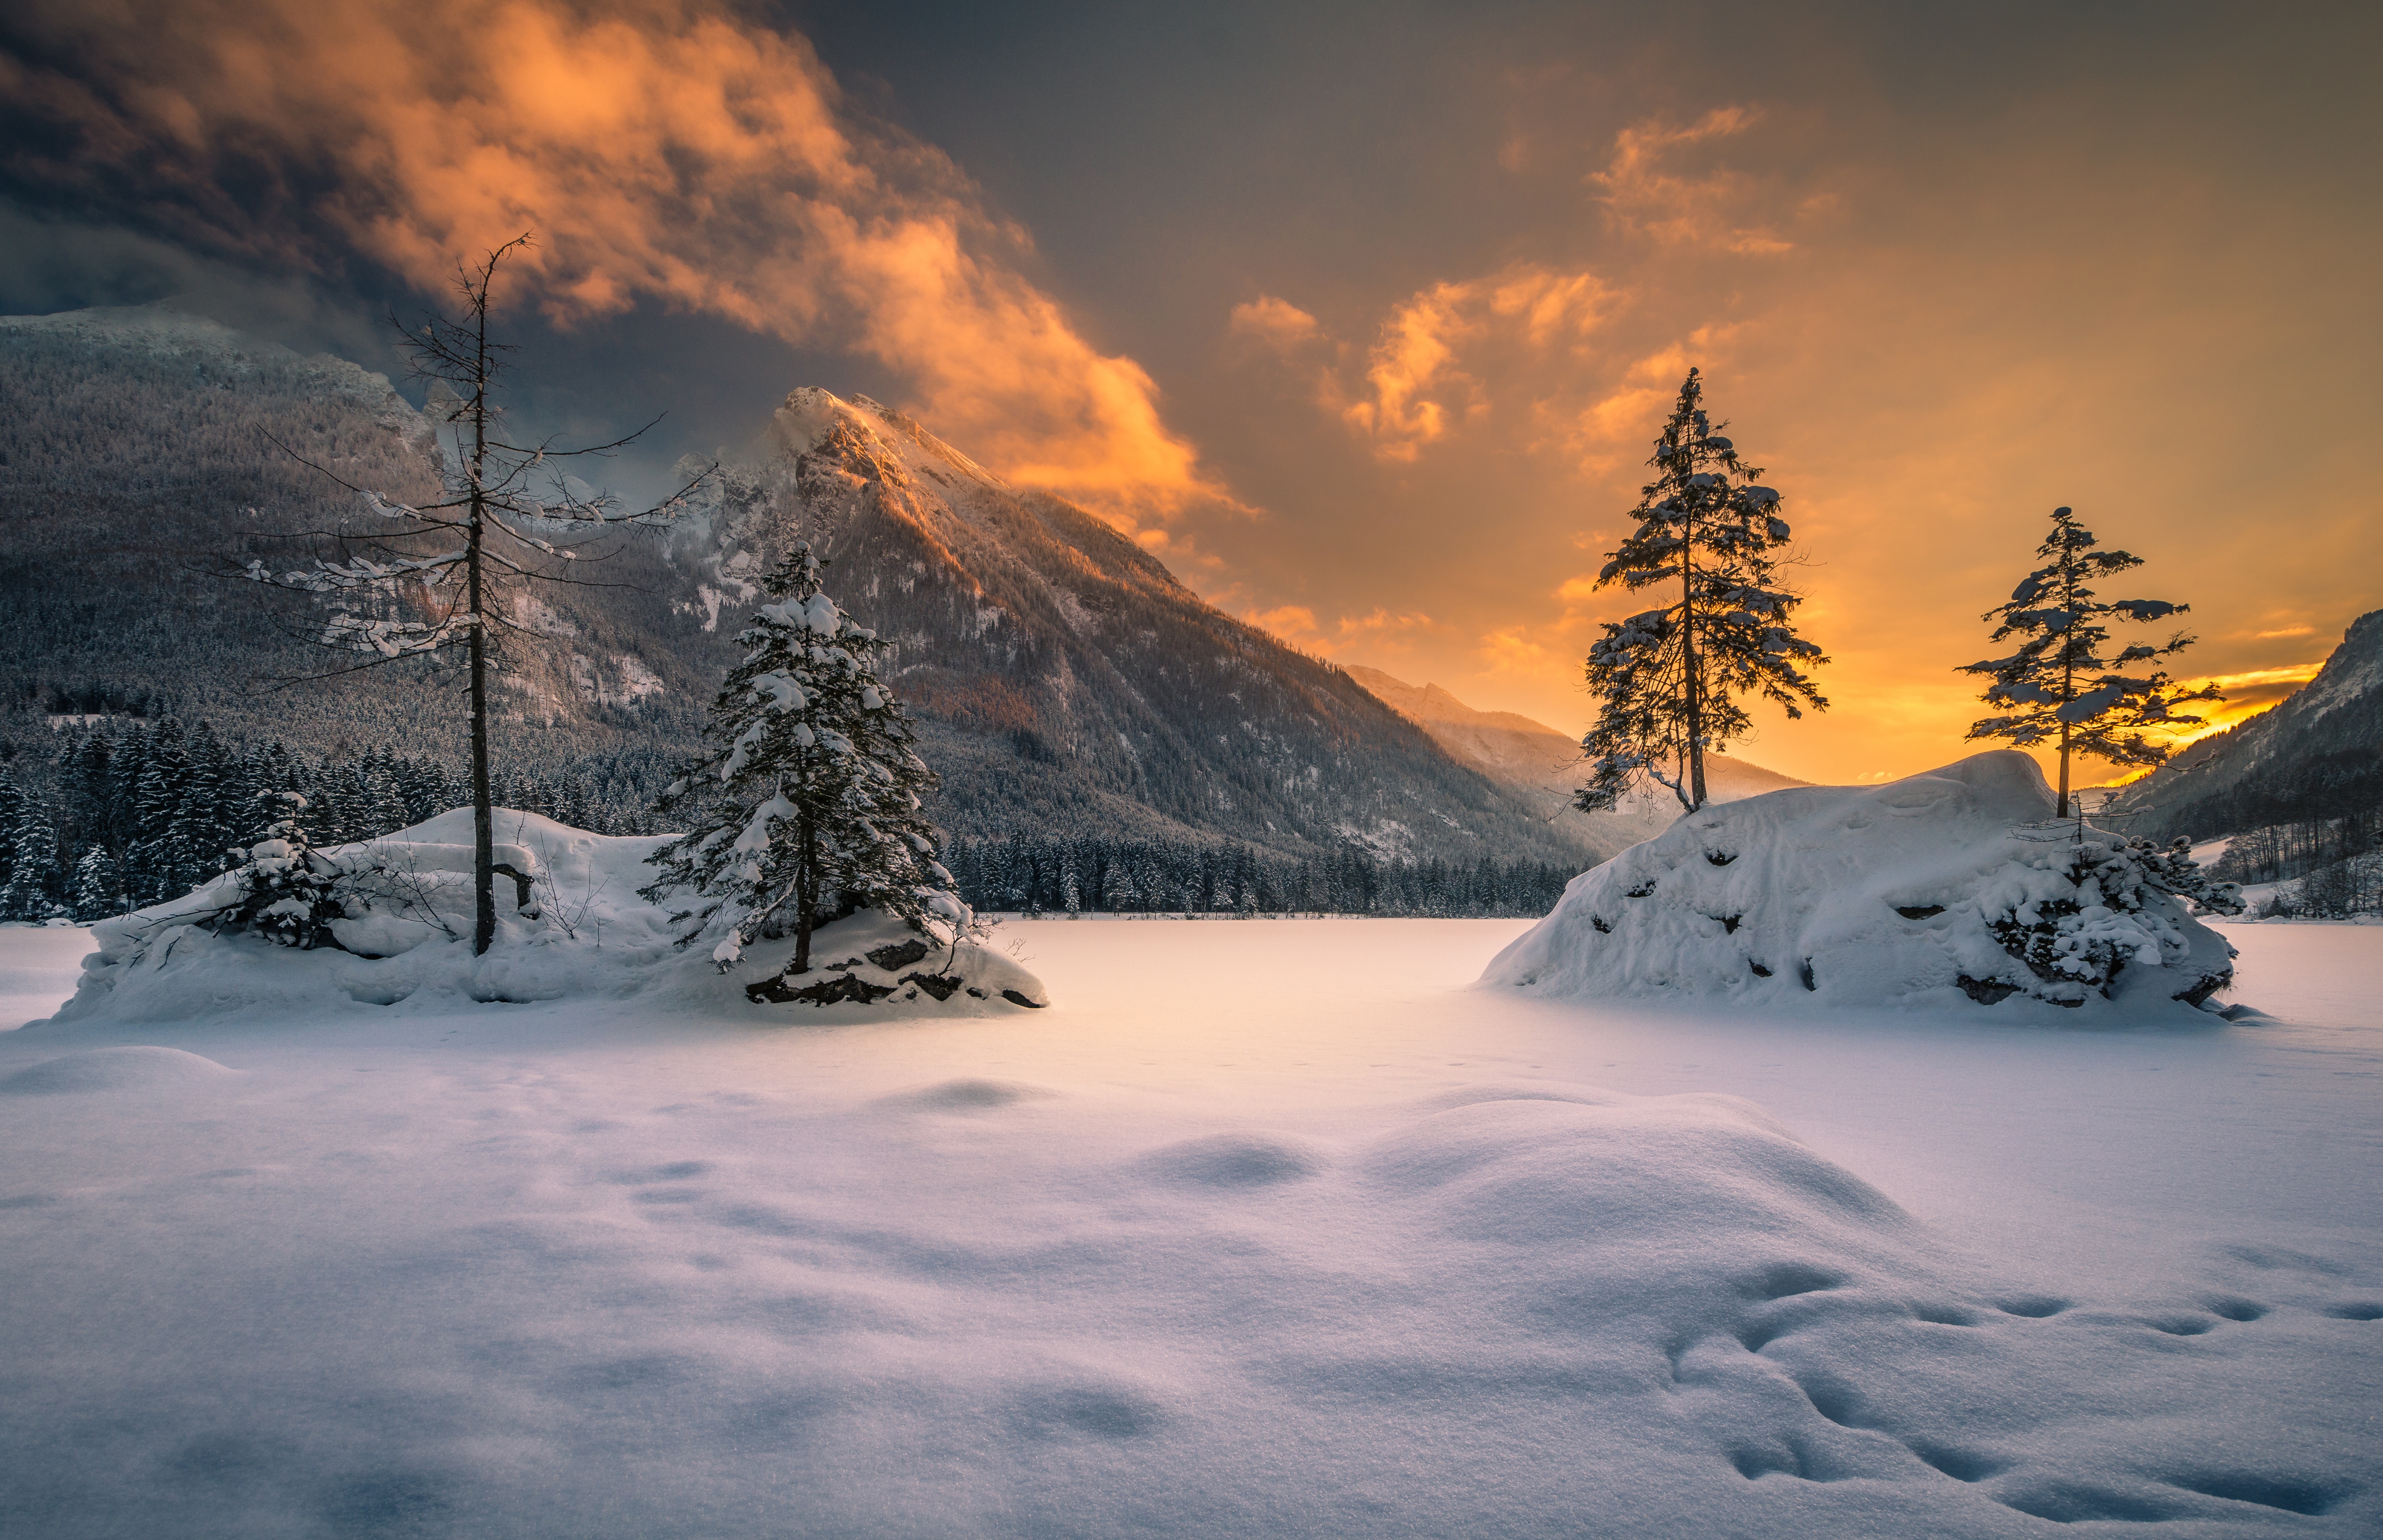 Скачать обои бесплатно Зима, Закат, Снег, Гора, Дерево, Германия, Земля/природа картинка на рабочий стол ПК